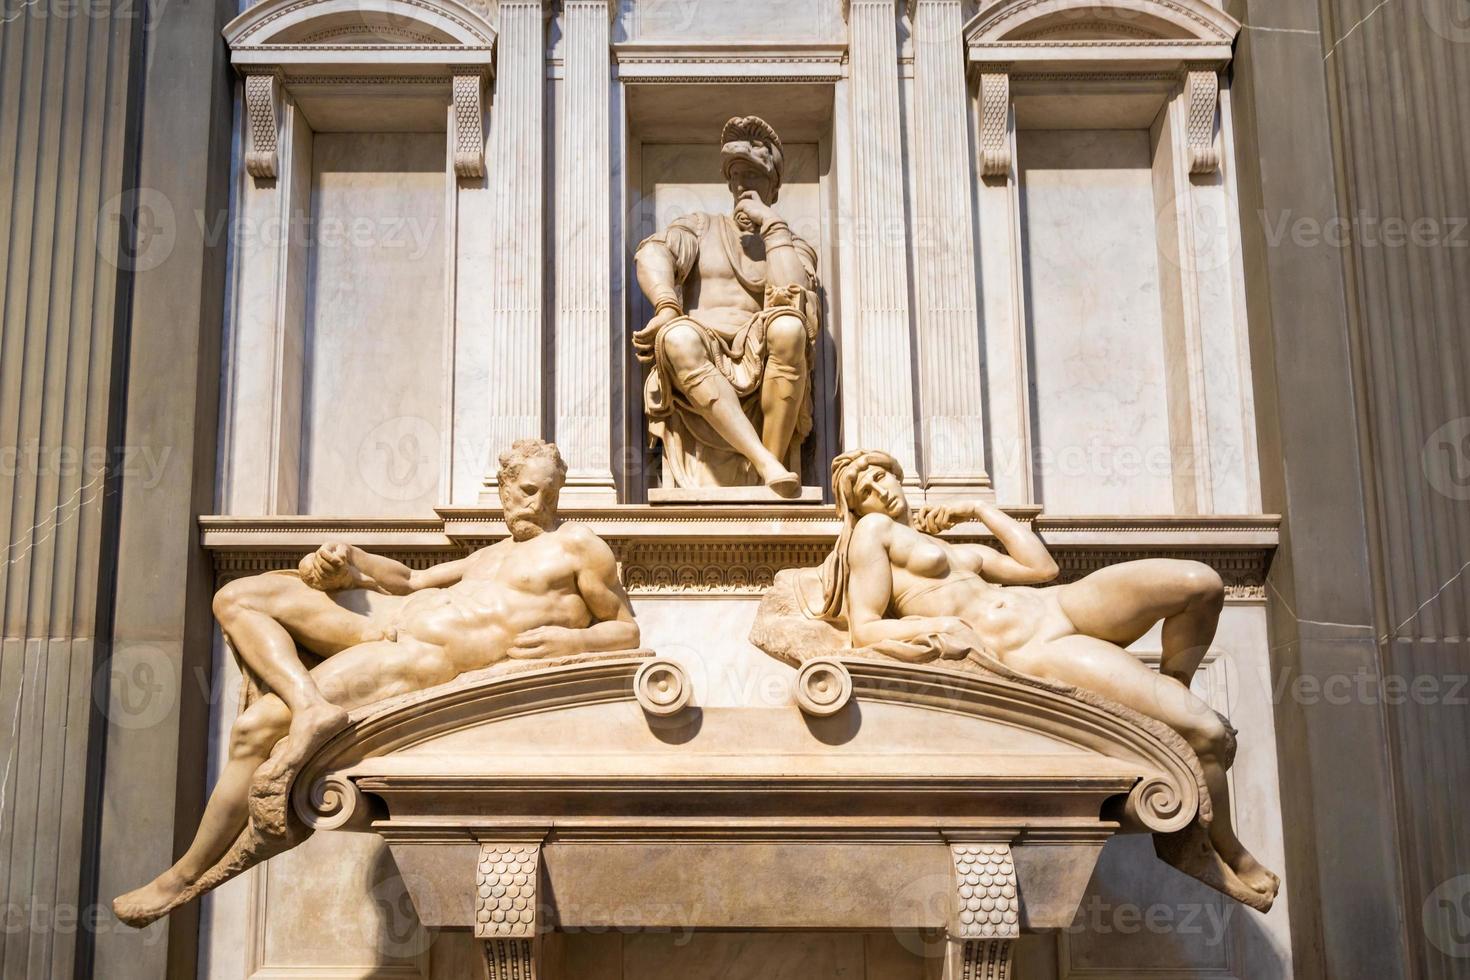 interior das capelas de medici - cappelle medicee. arte renascentista de michelangelo em florença, itália. foto